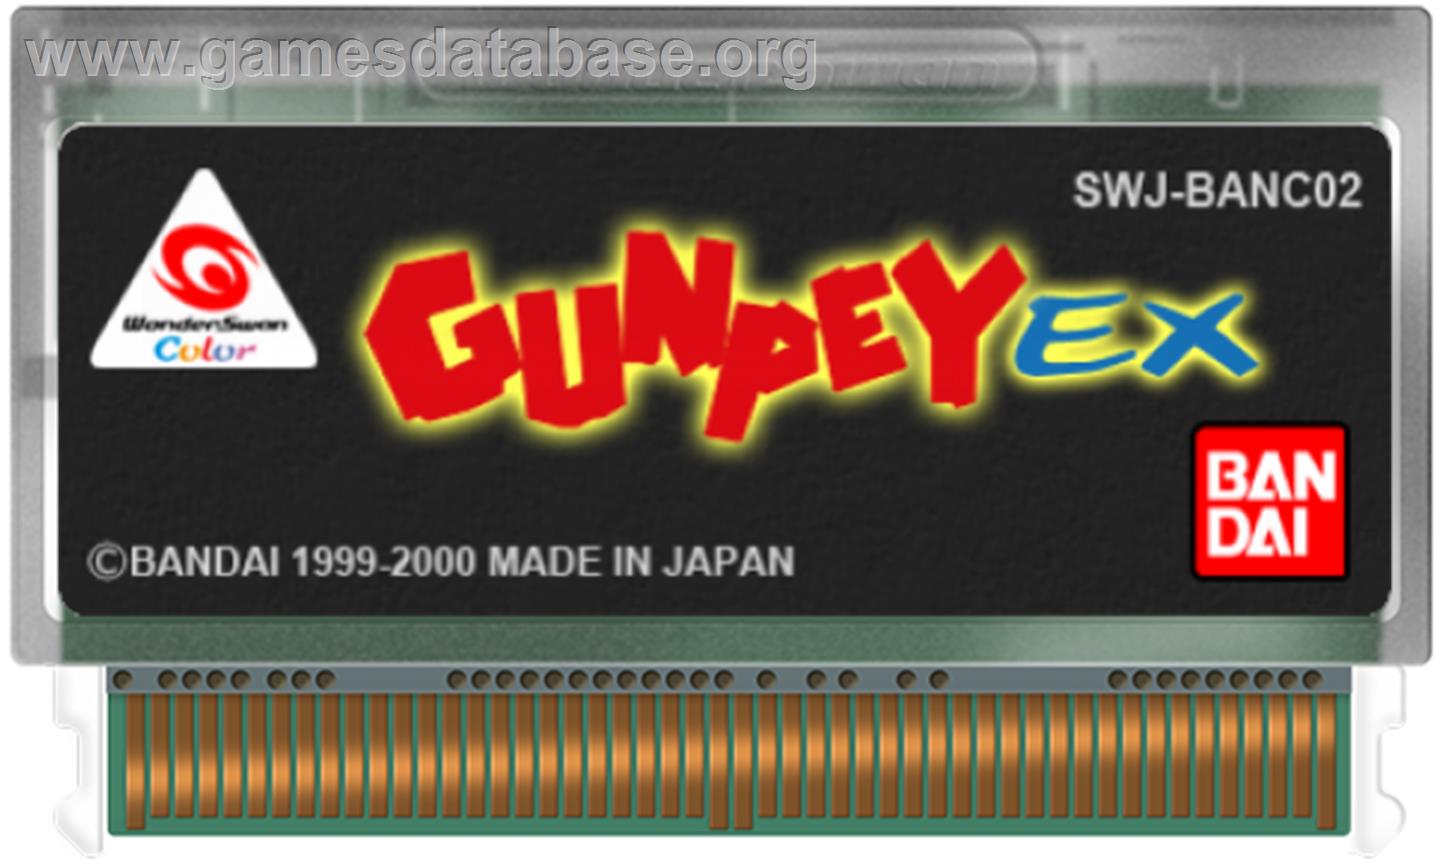 Gunpey EX - Bandai WonderSwan Color - Artwork - Cartridge